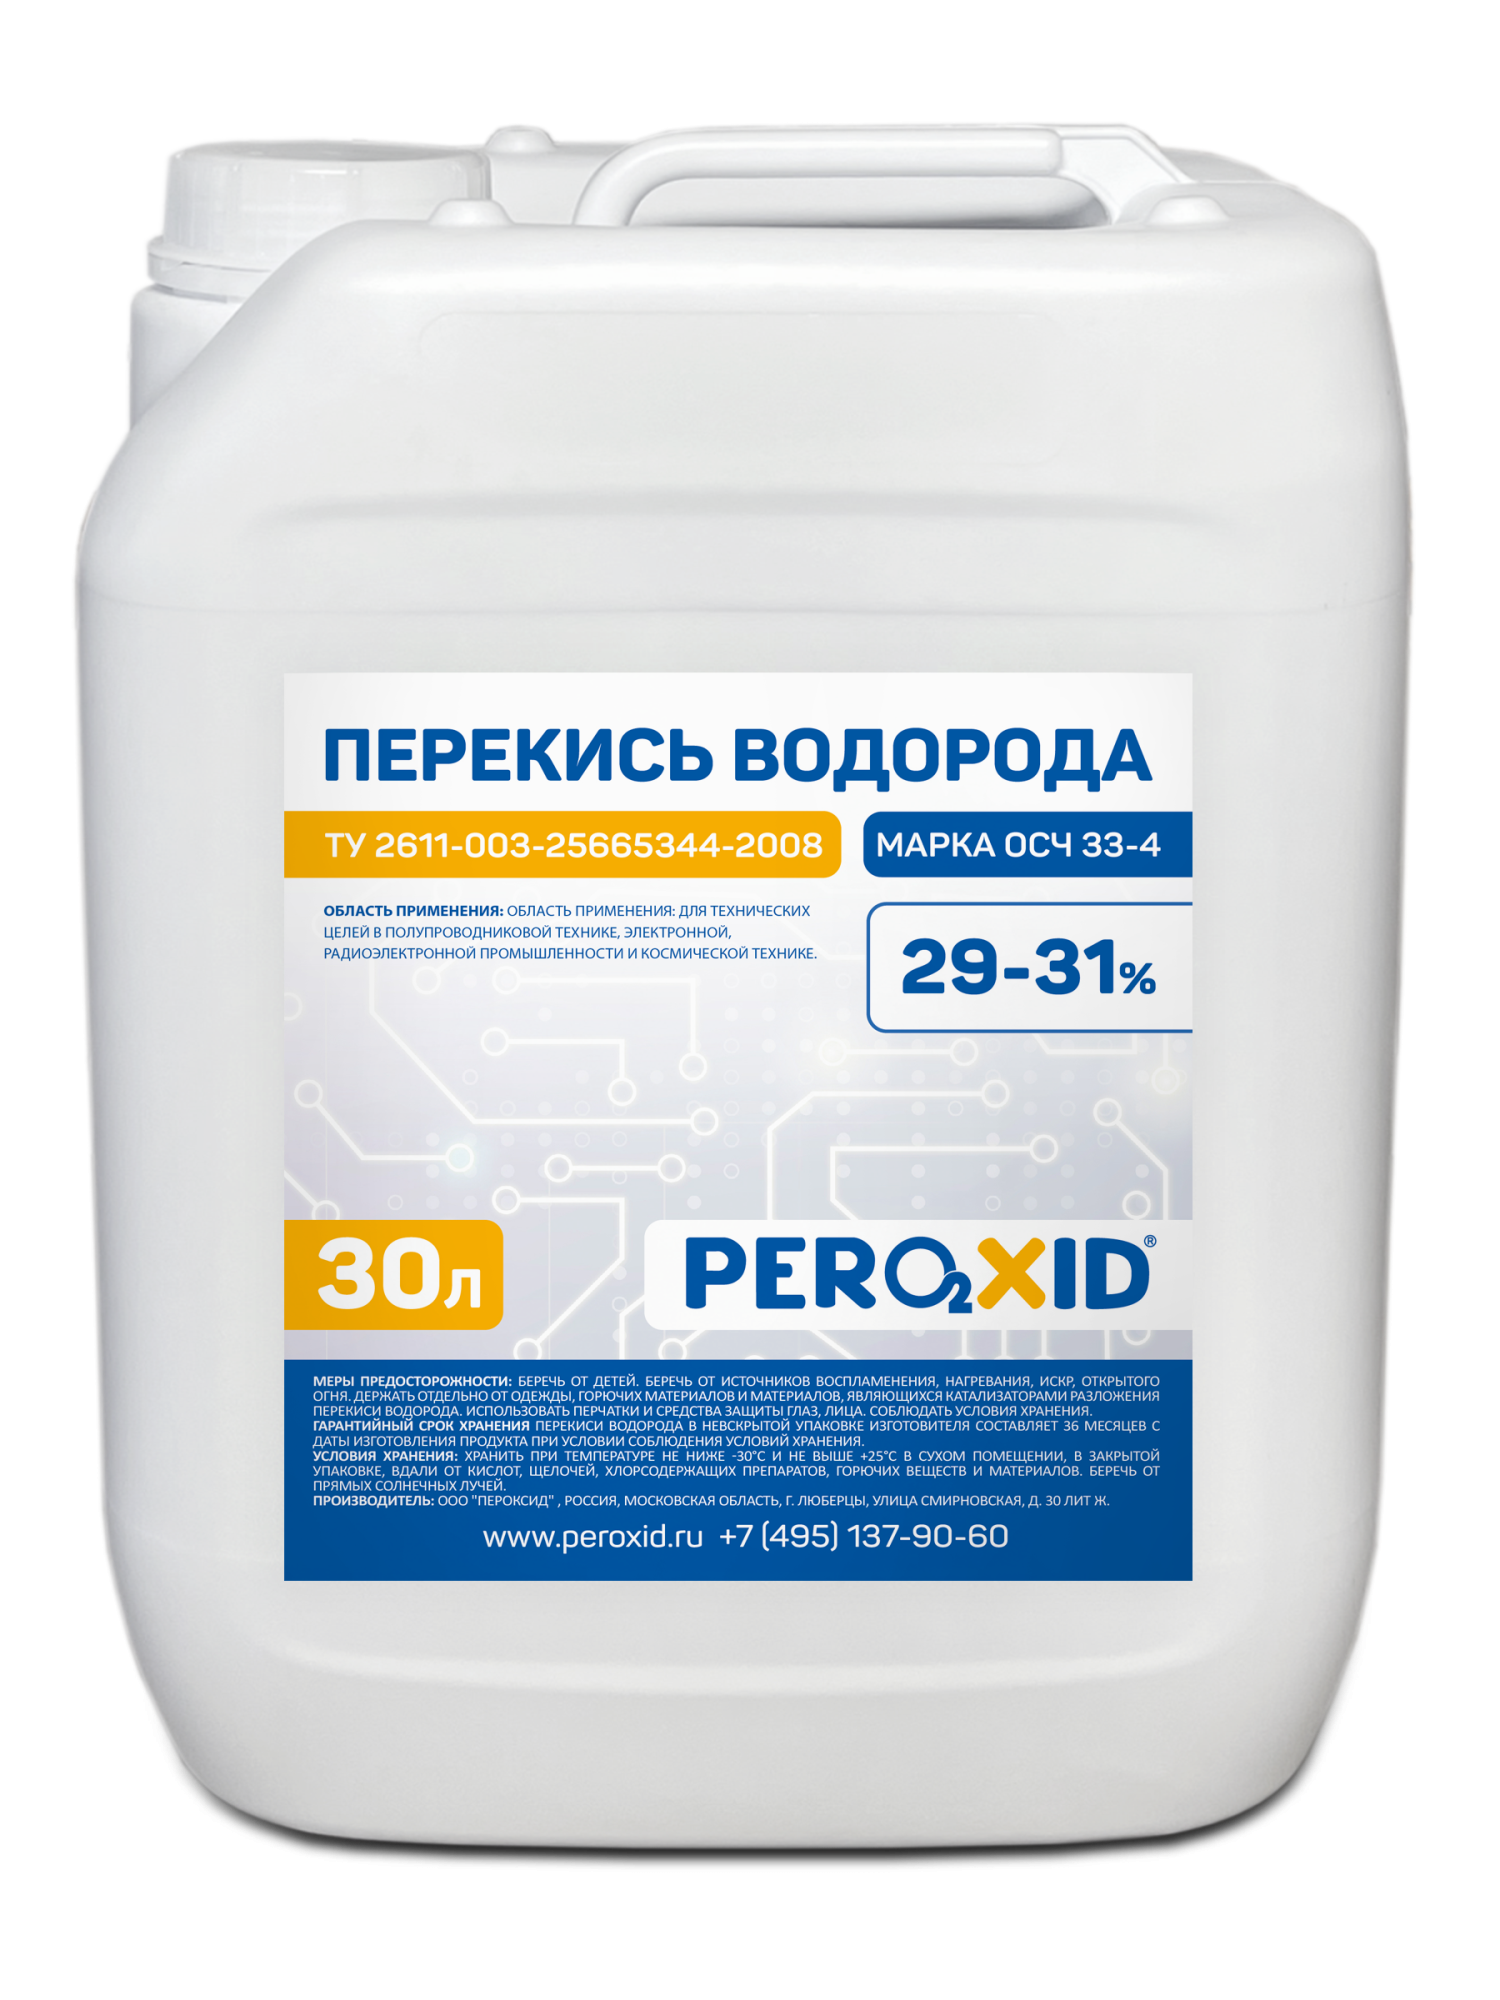 Перекись водорода особой чистоты PEROXID 29-31% марка ОСЧ 33-4 ТУ 2611-003-25665344-2008 30 л/31 кг